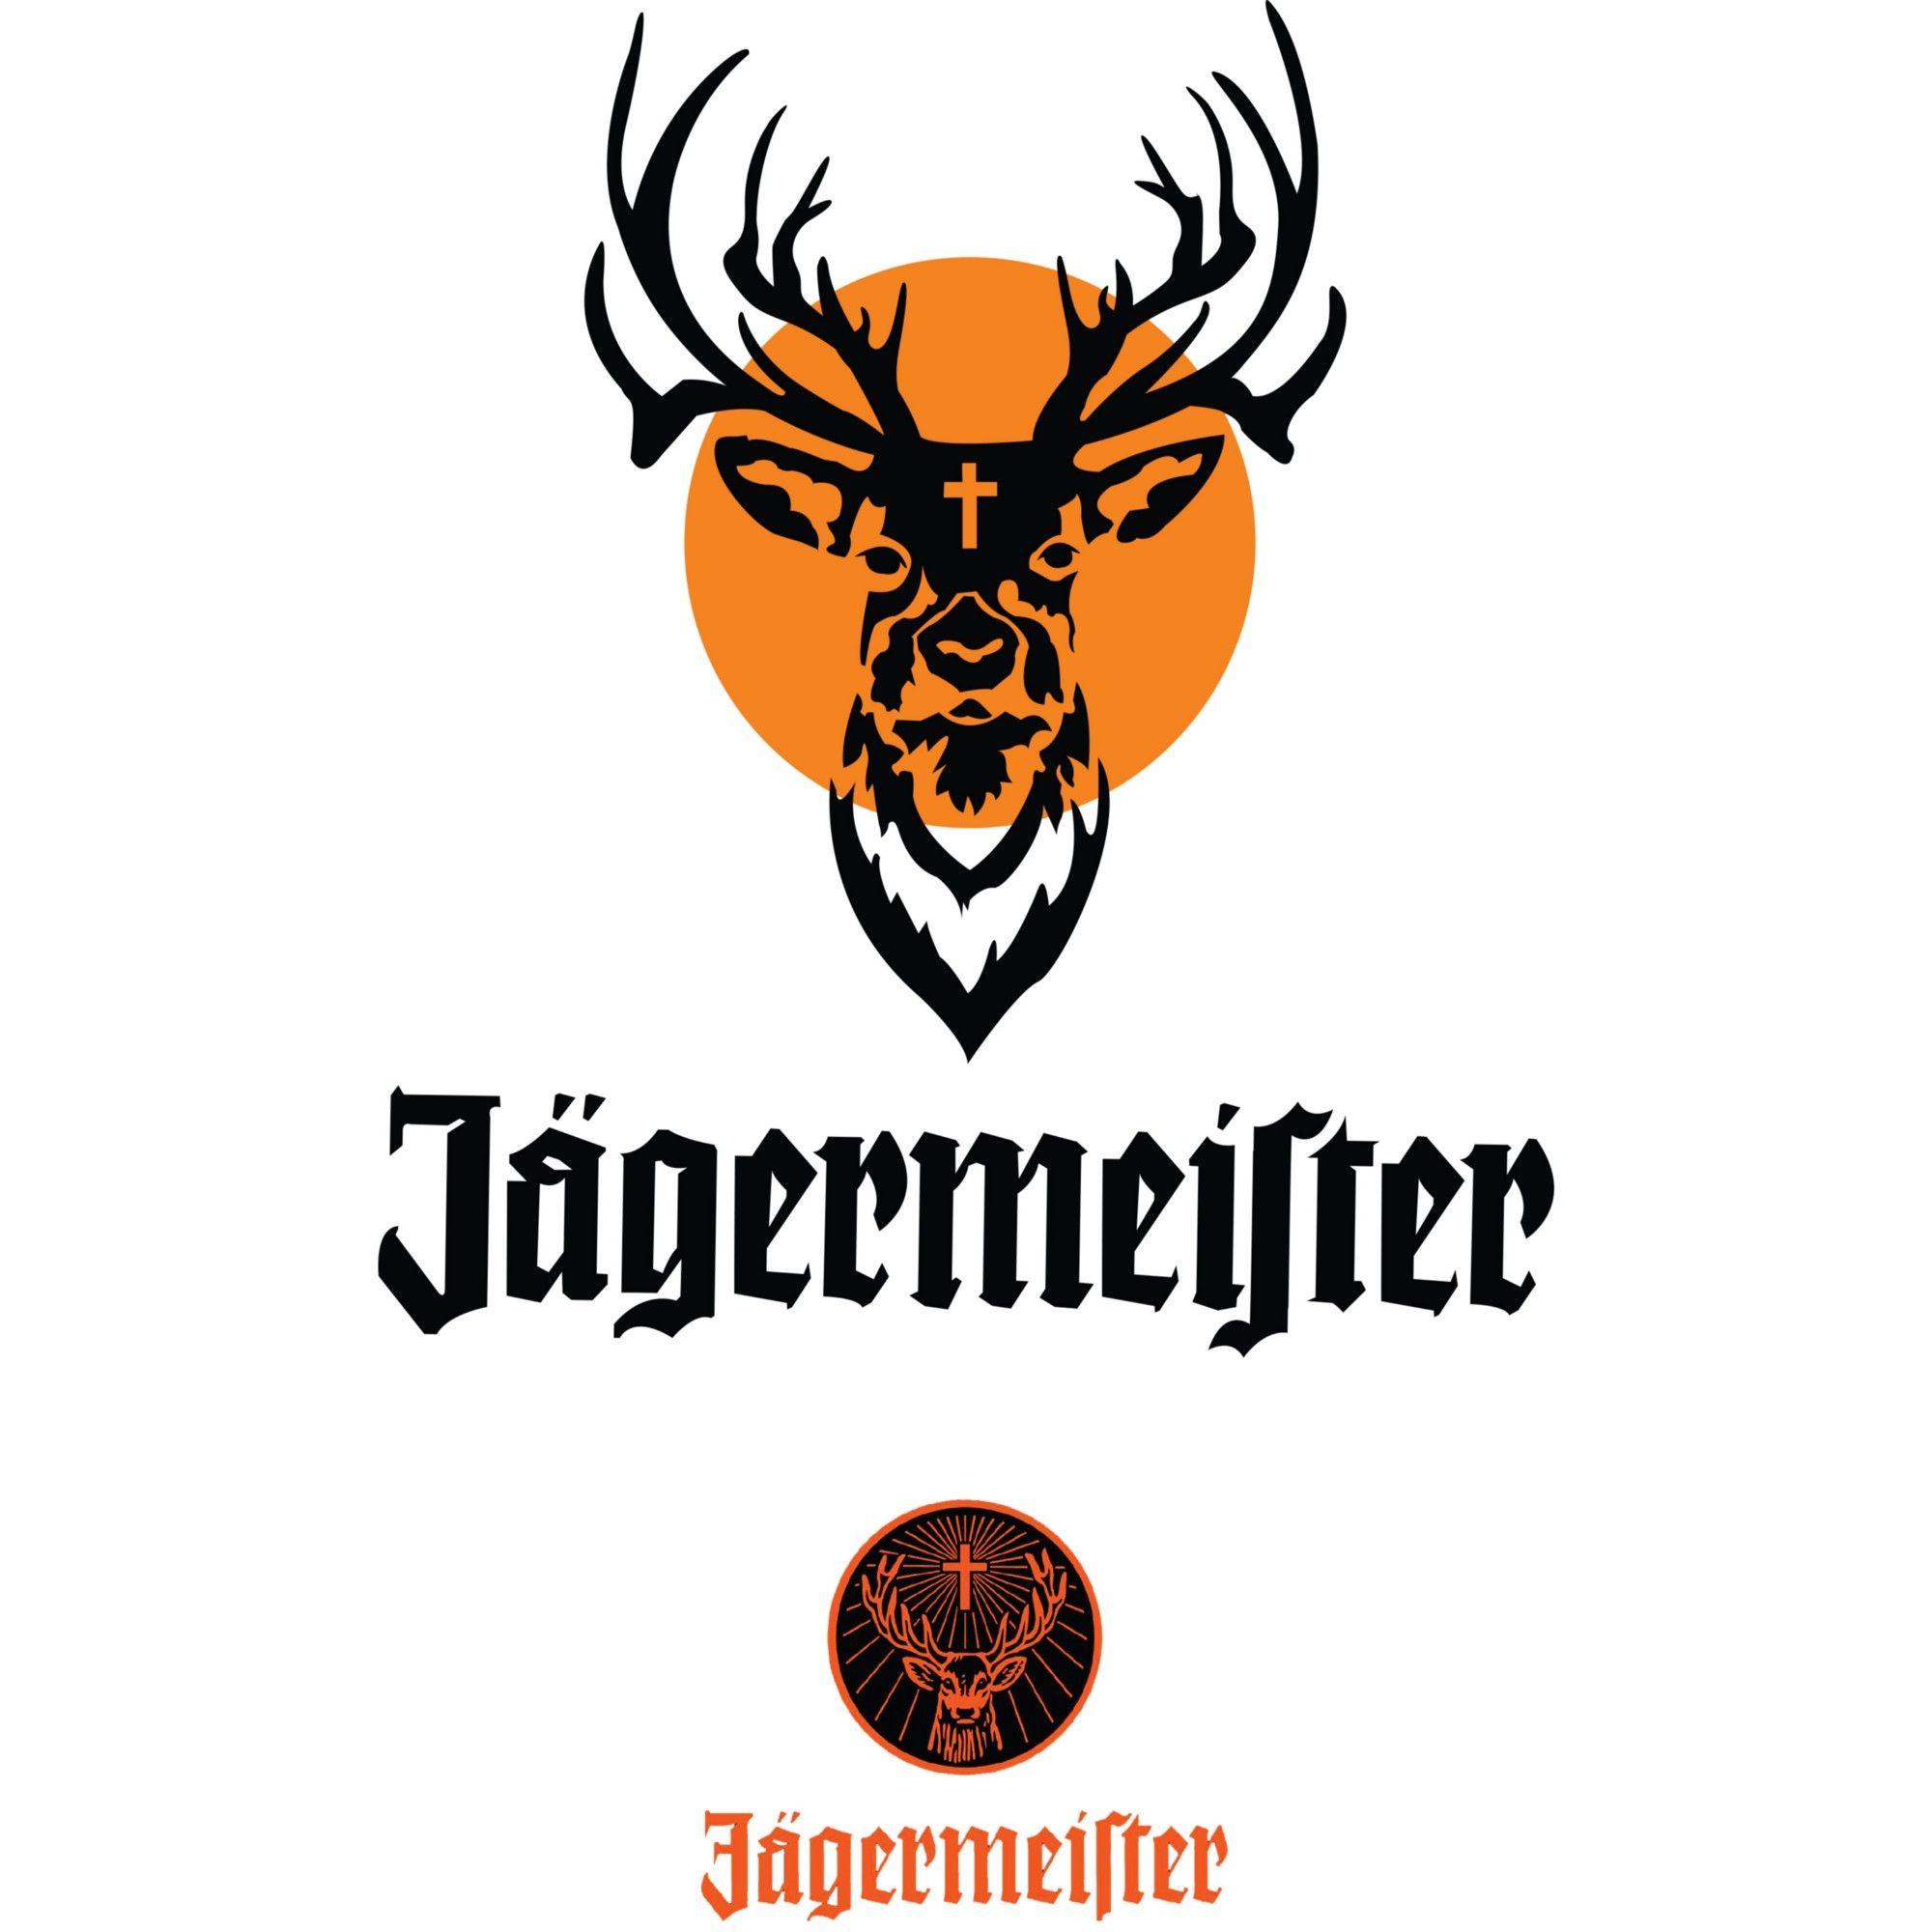 Jagermeister Logo - Jägermeister